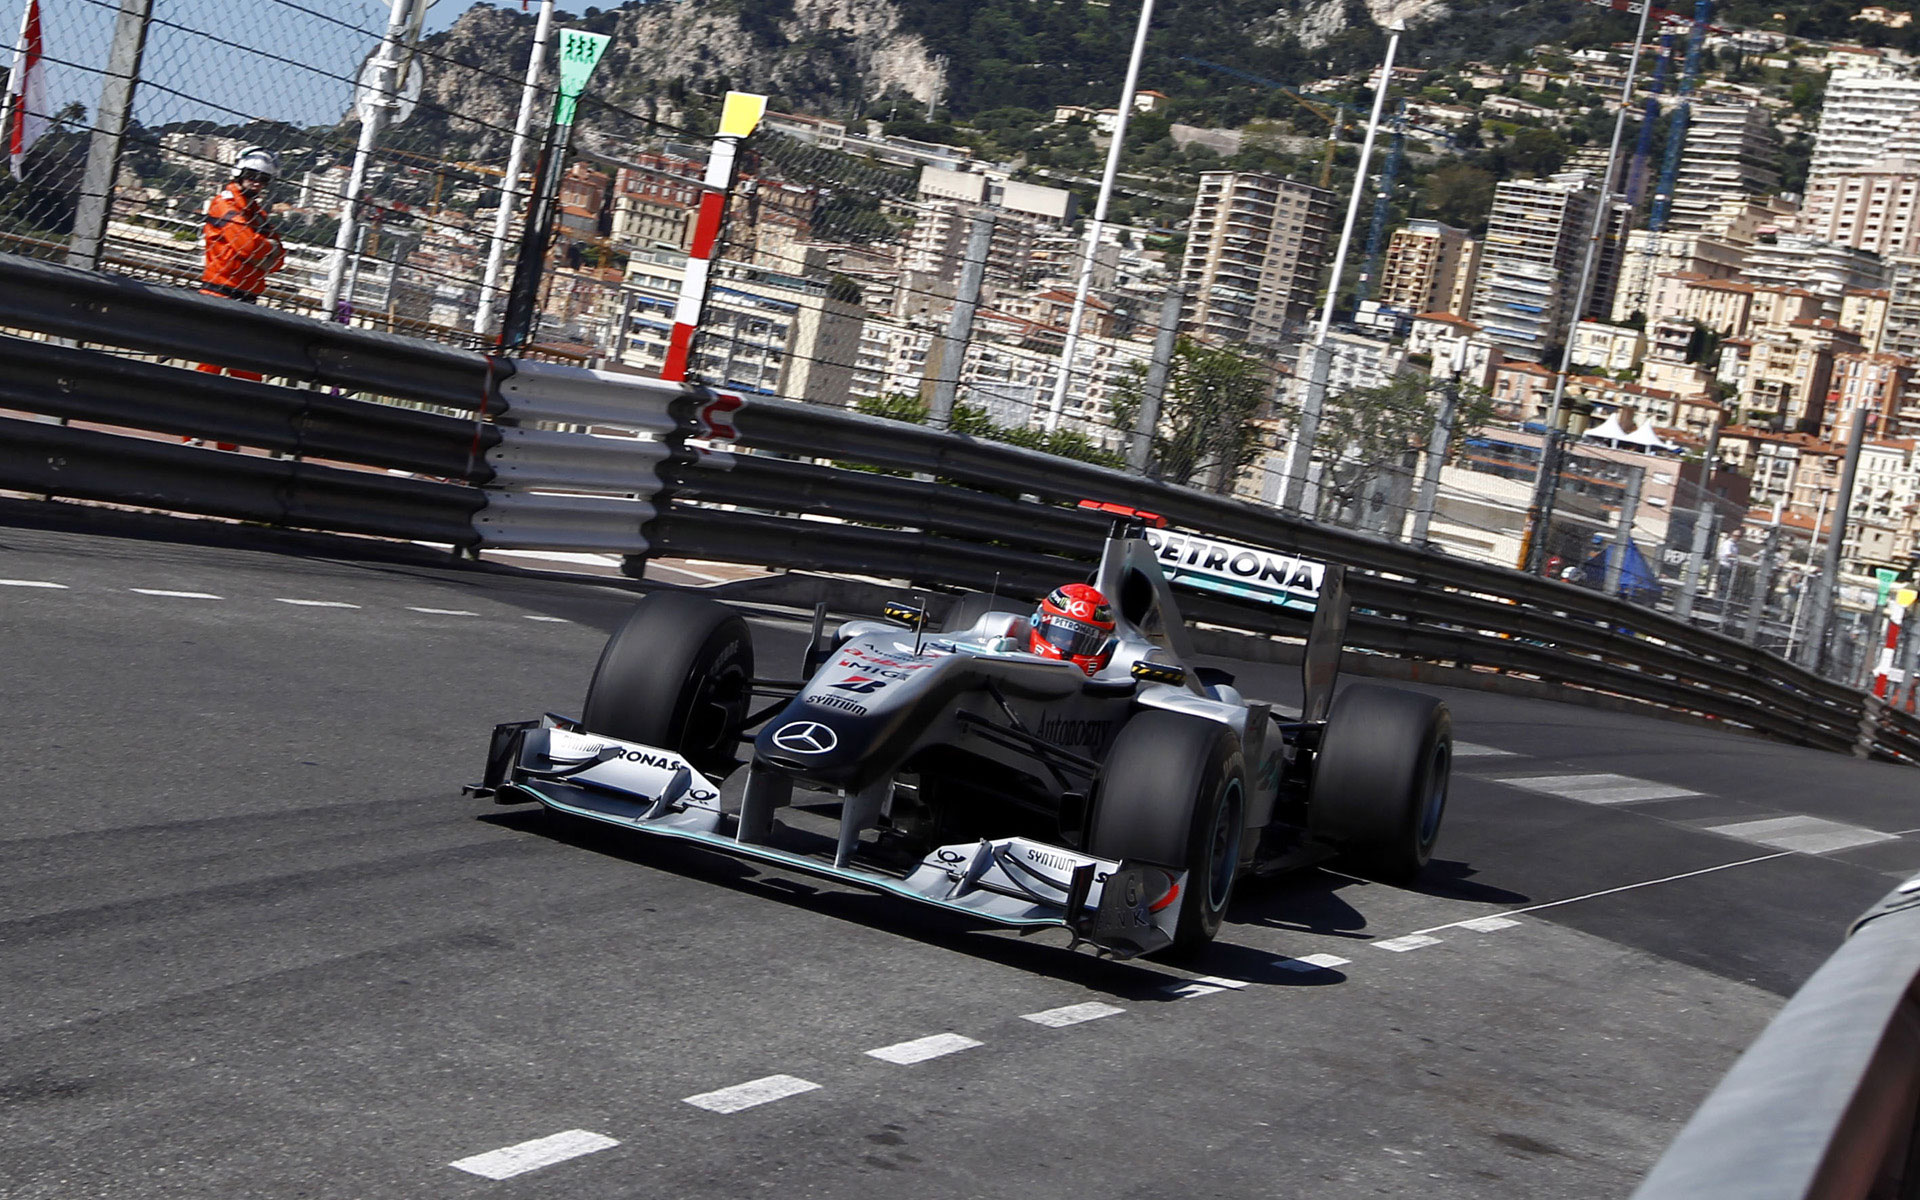 Monaco Grand Prix Wallpaper